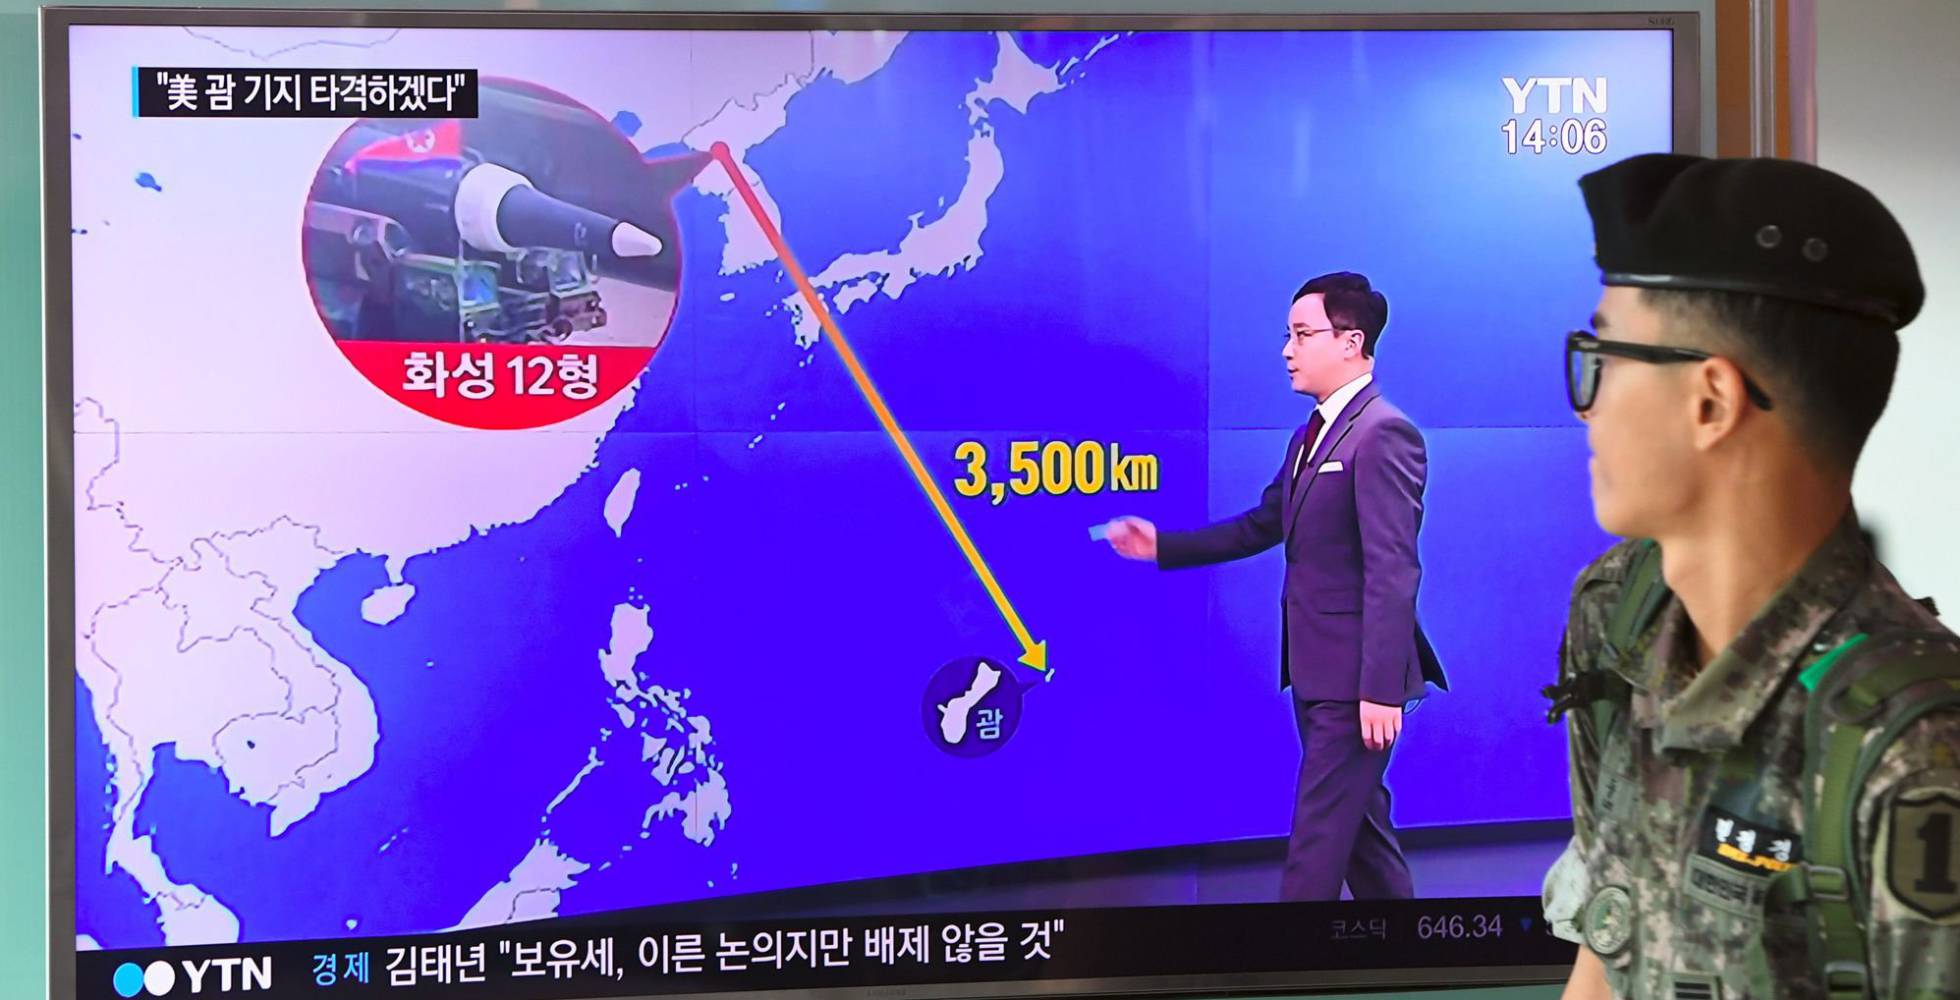 Corea - Corea Del Norte...¿La guerra se acerca? - Página 26 1502332555_399087_1502333234_noticia_normal_recorte1